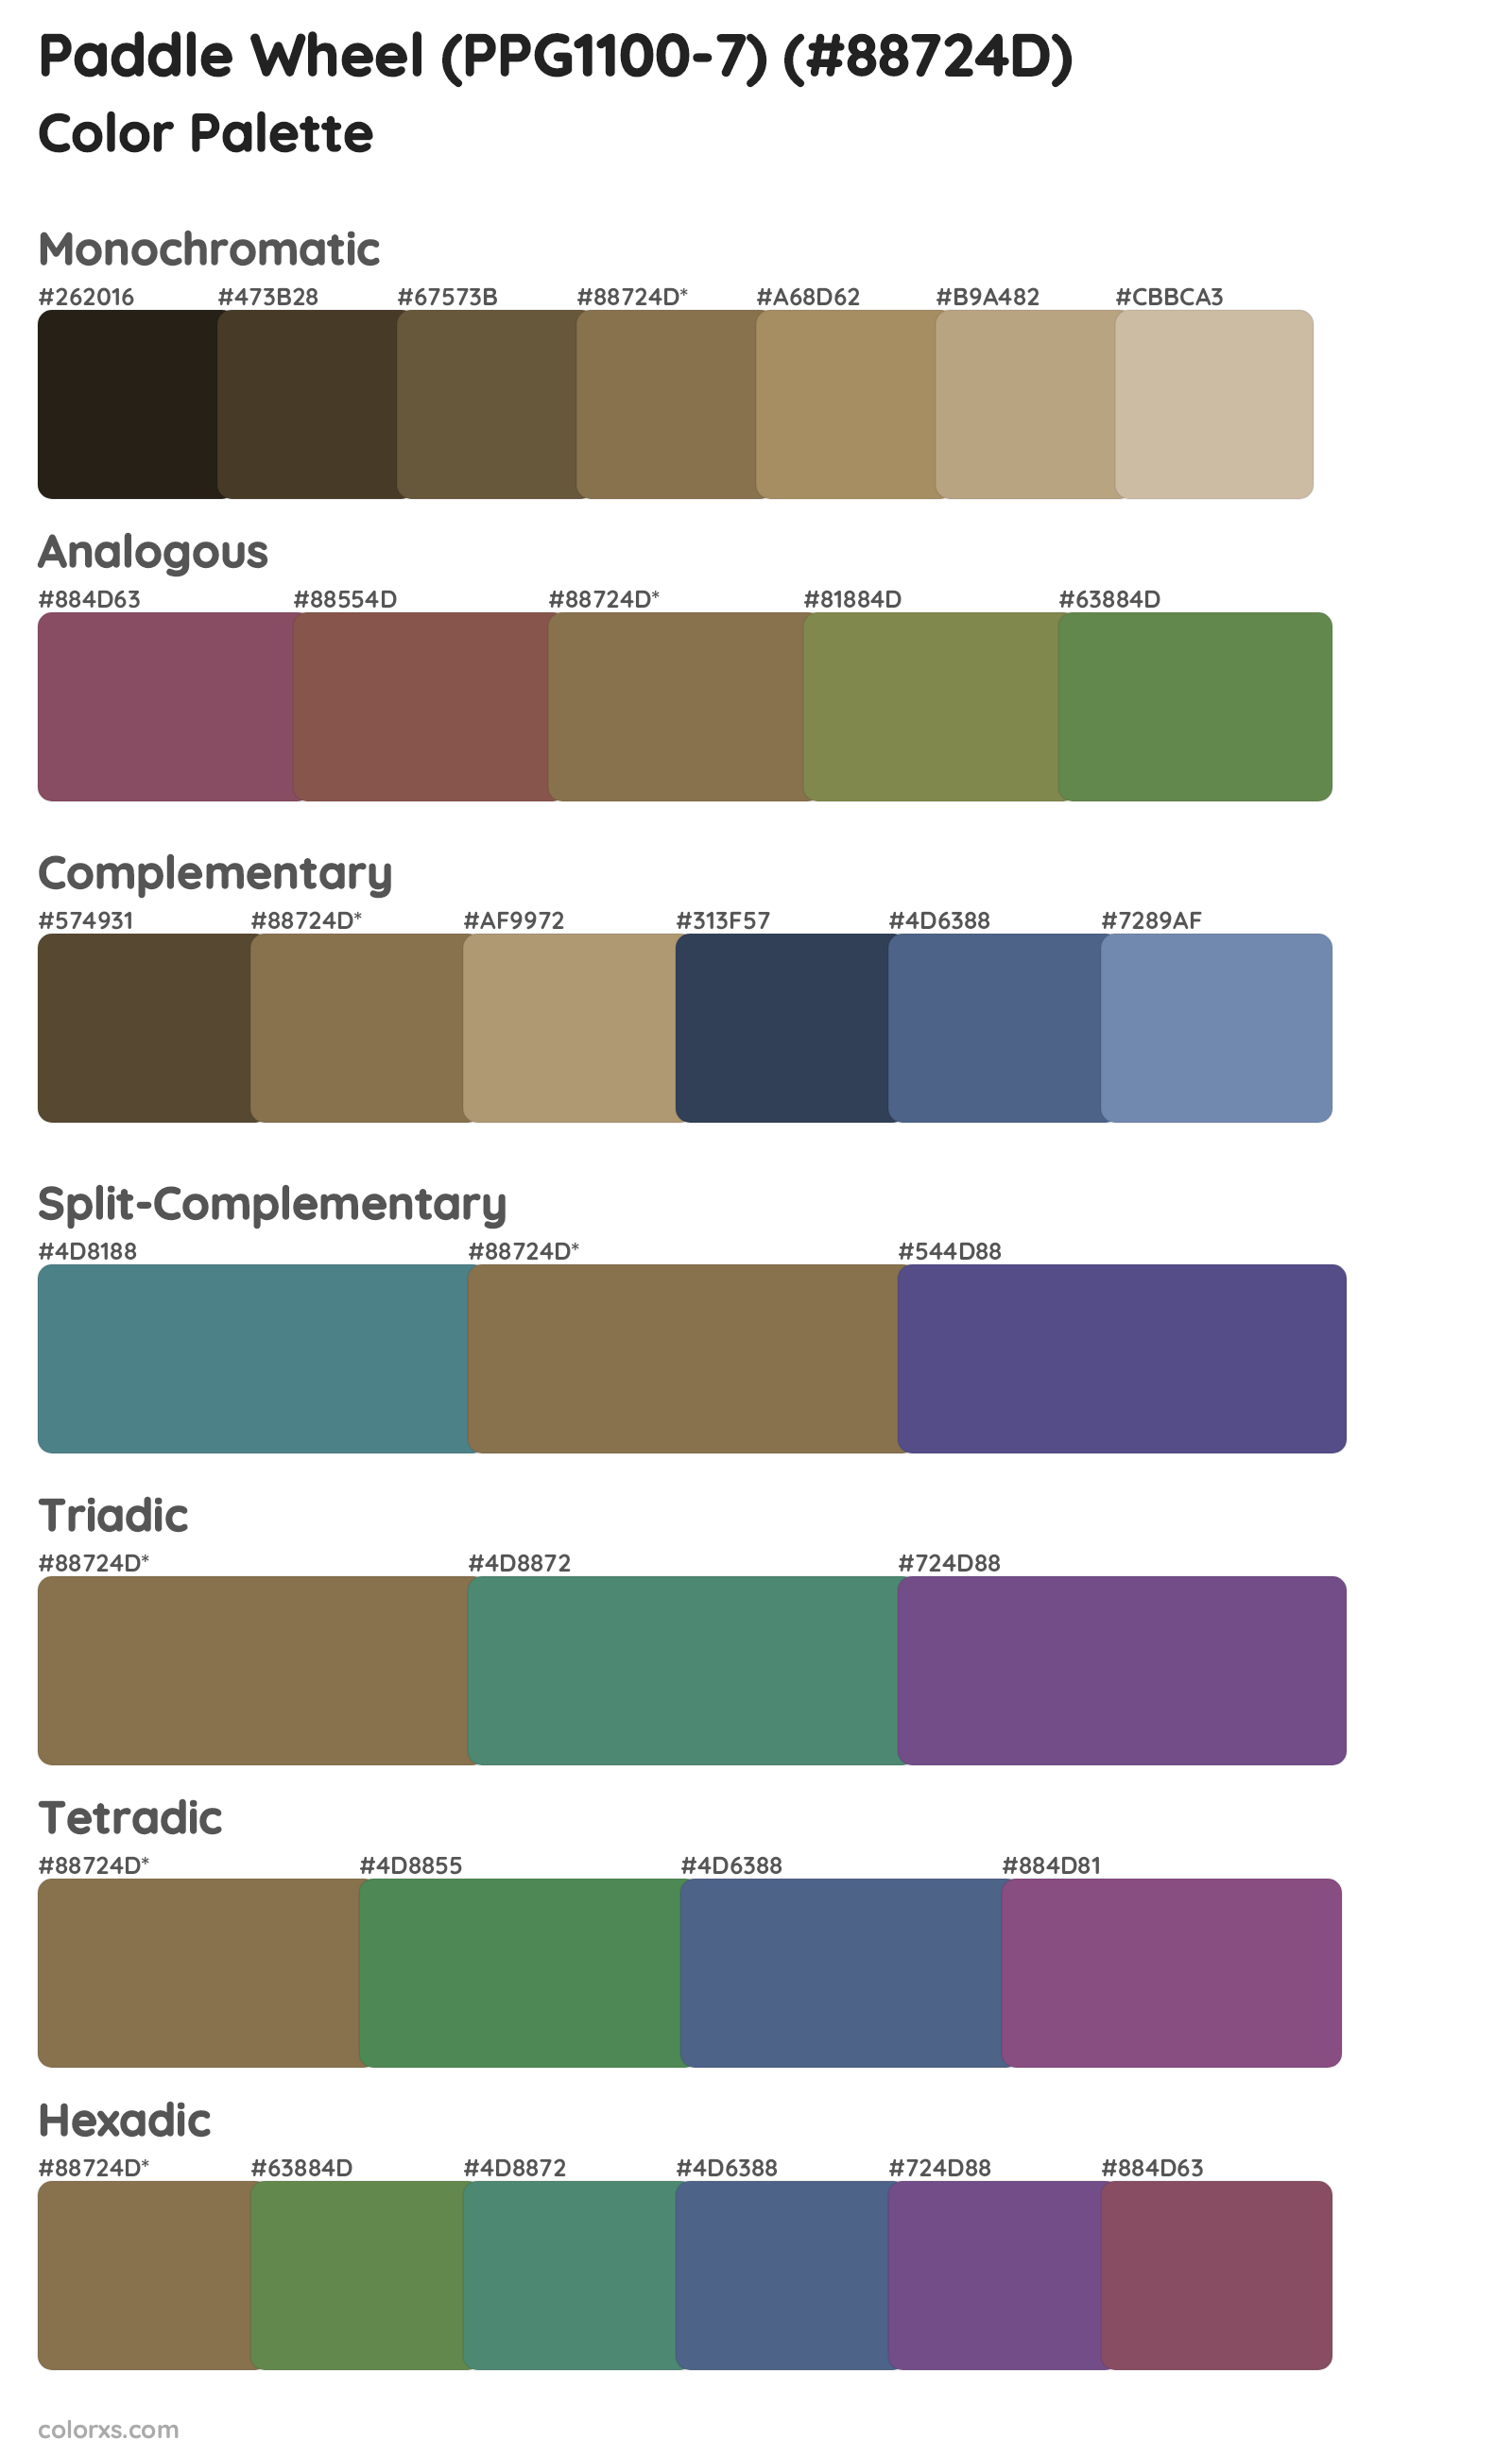 Paddle Wheel (PPG1100-7) Color Scheme Palettes